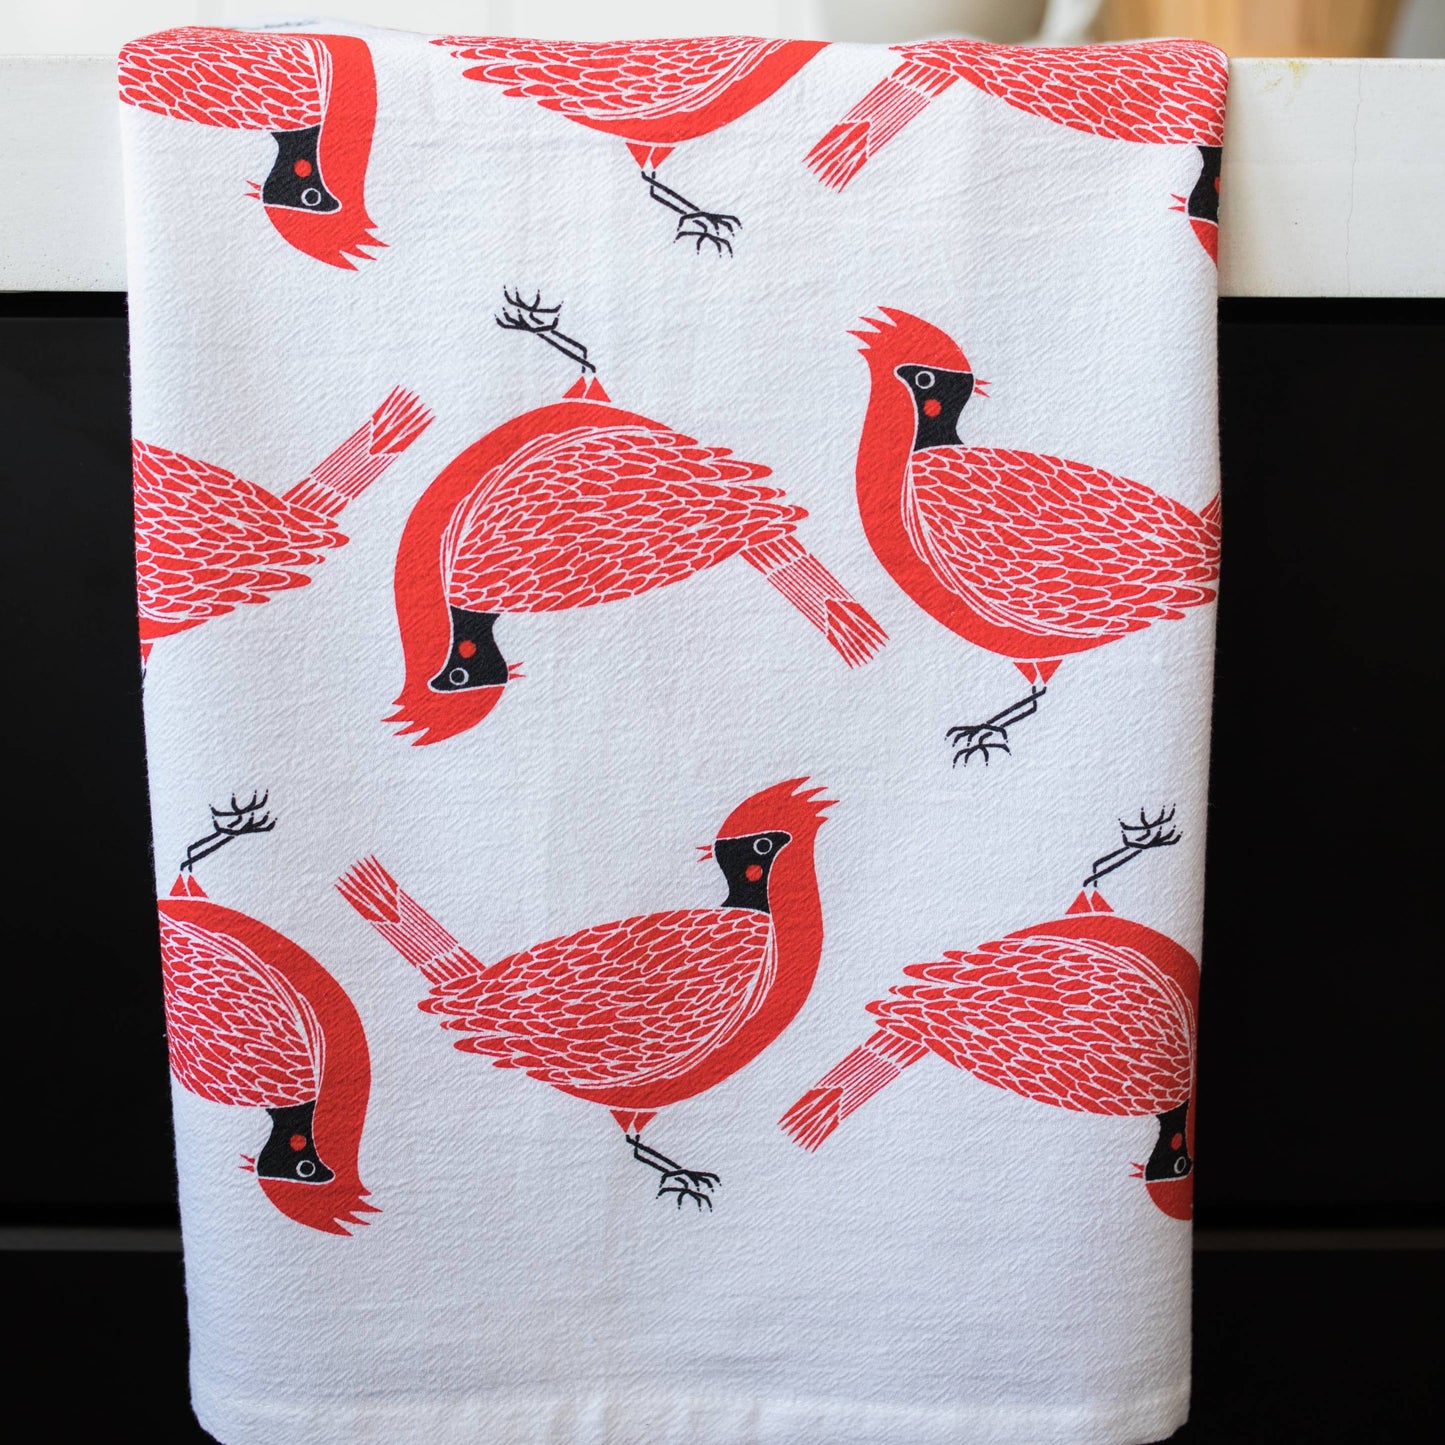 Cotton Cardinal print tea towel